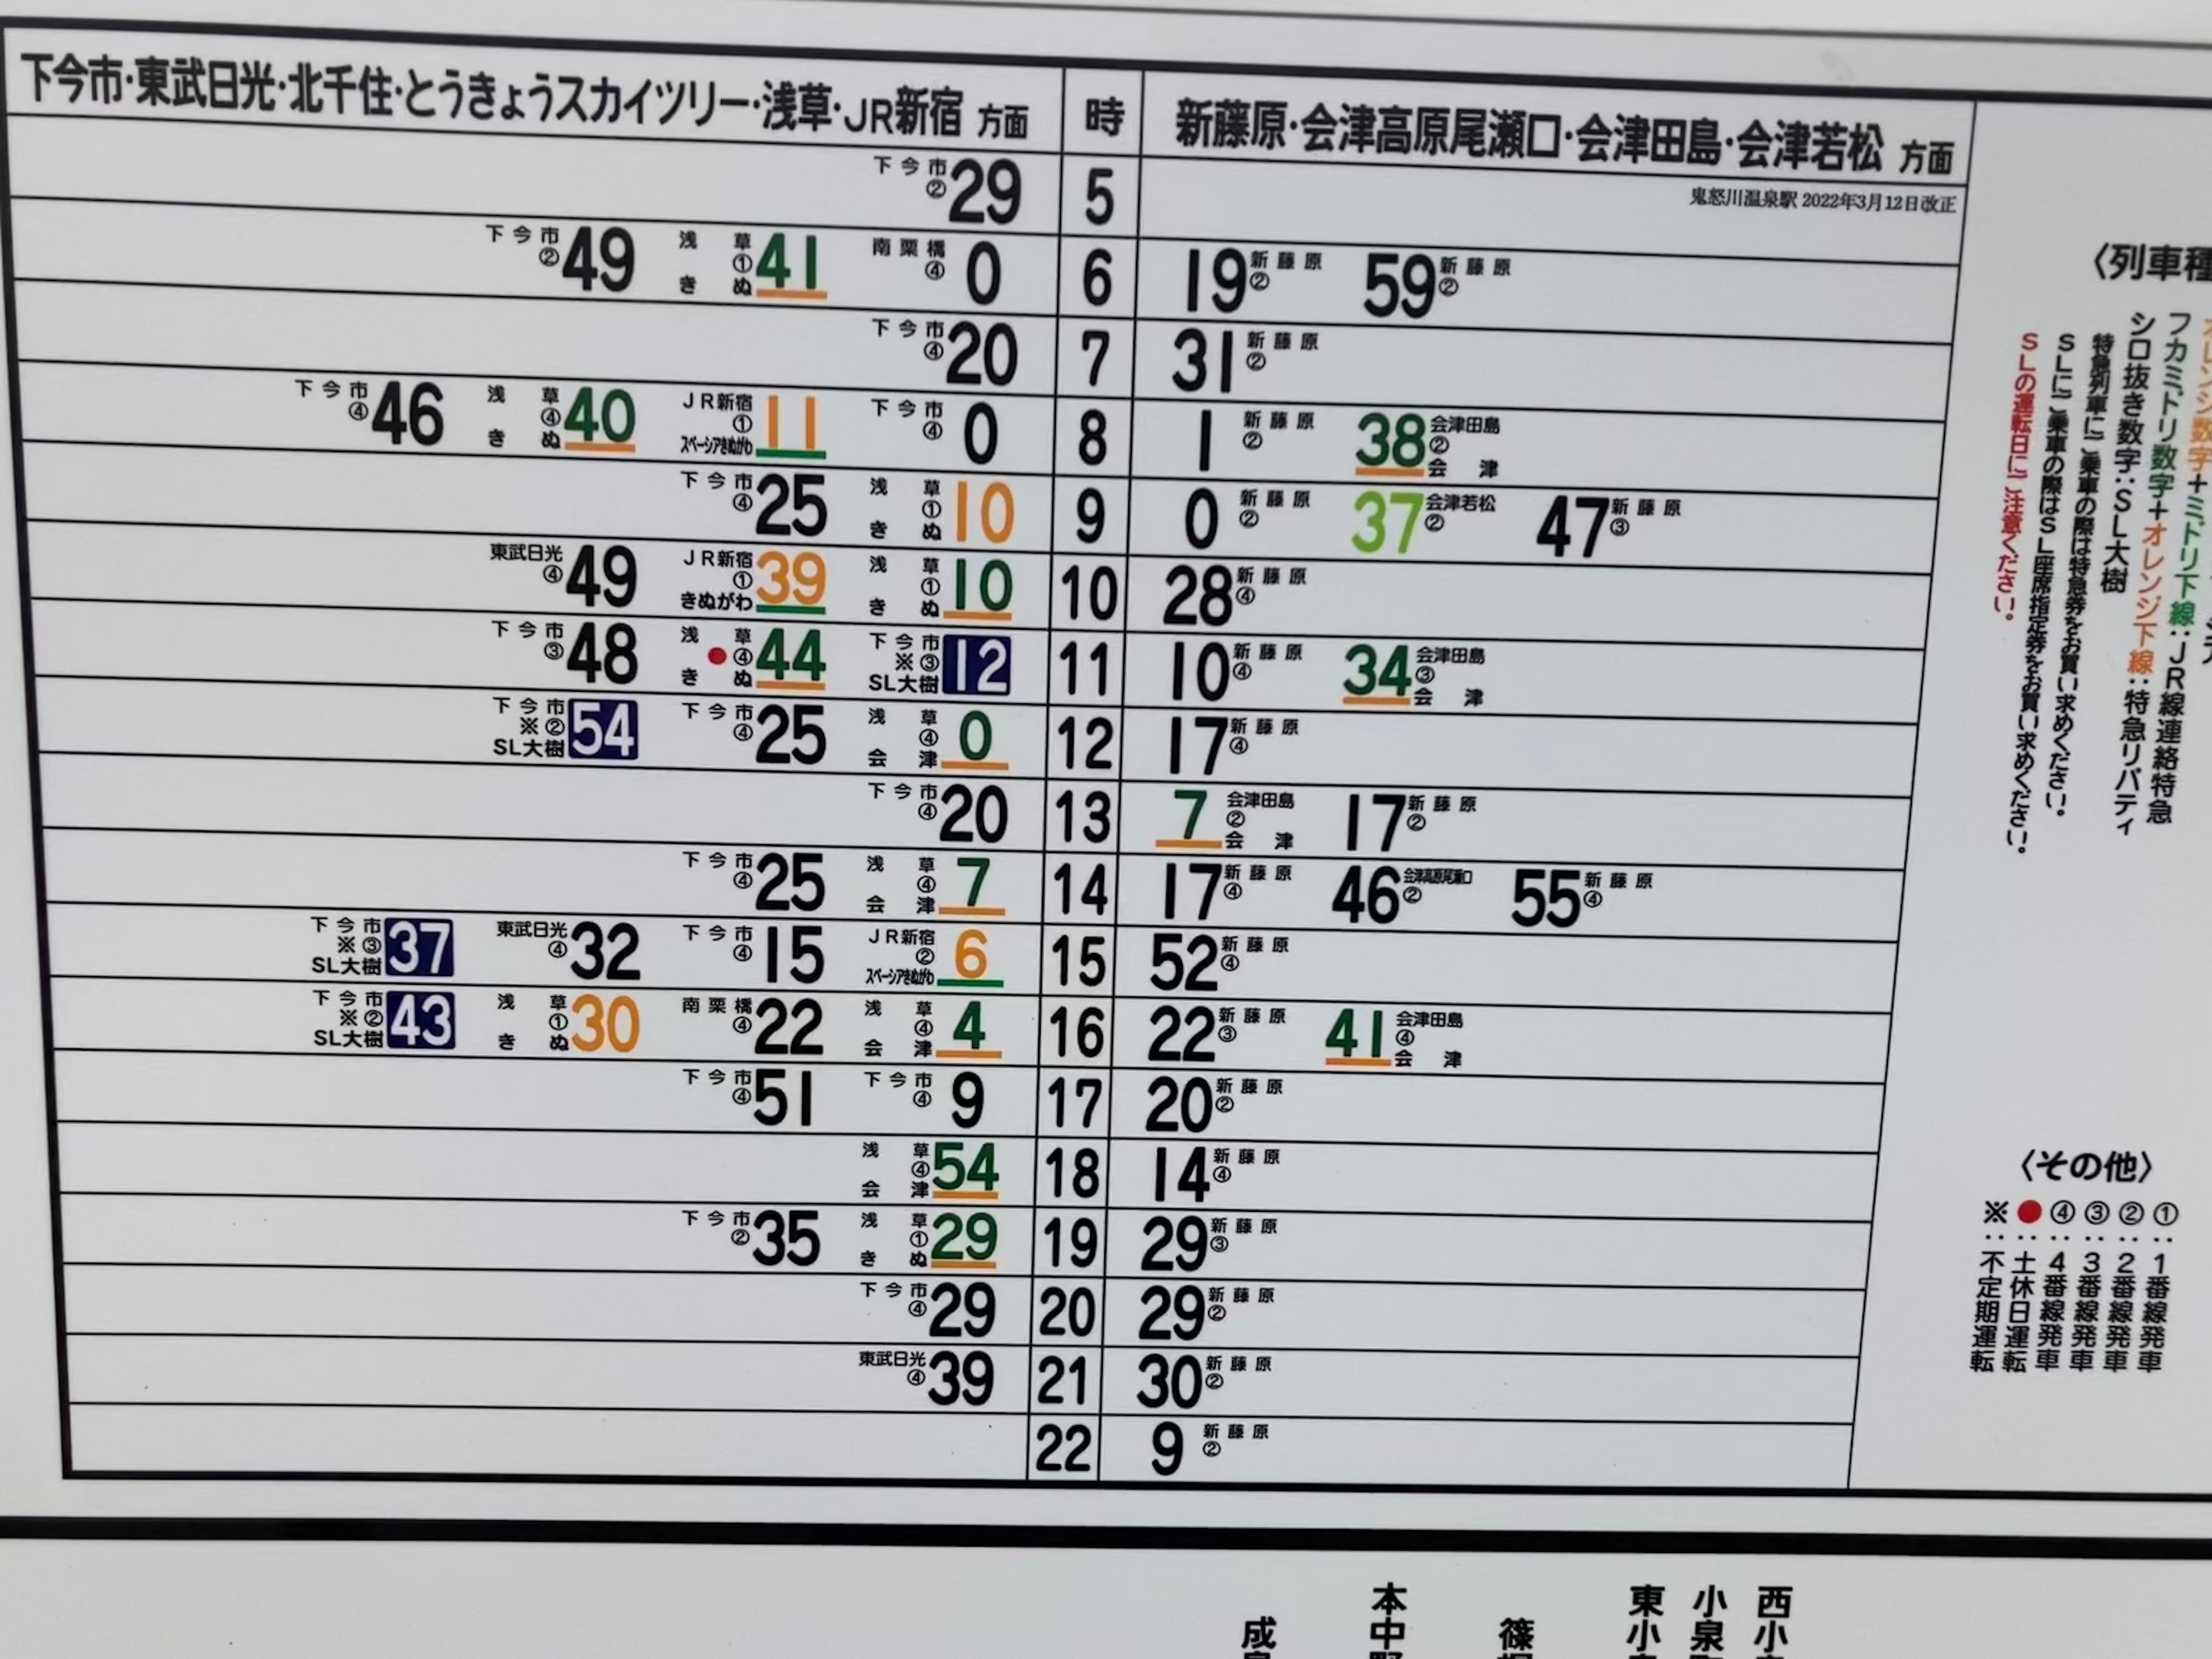 駅掲出の時刻表の画像